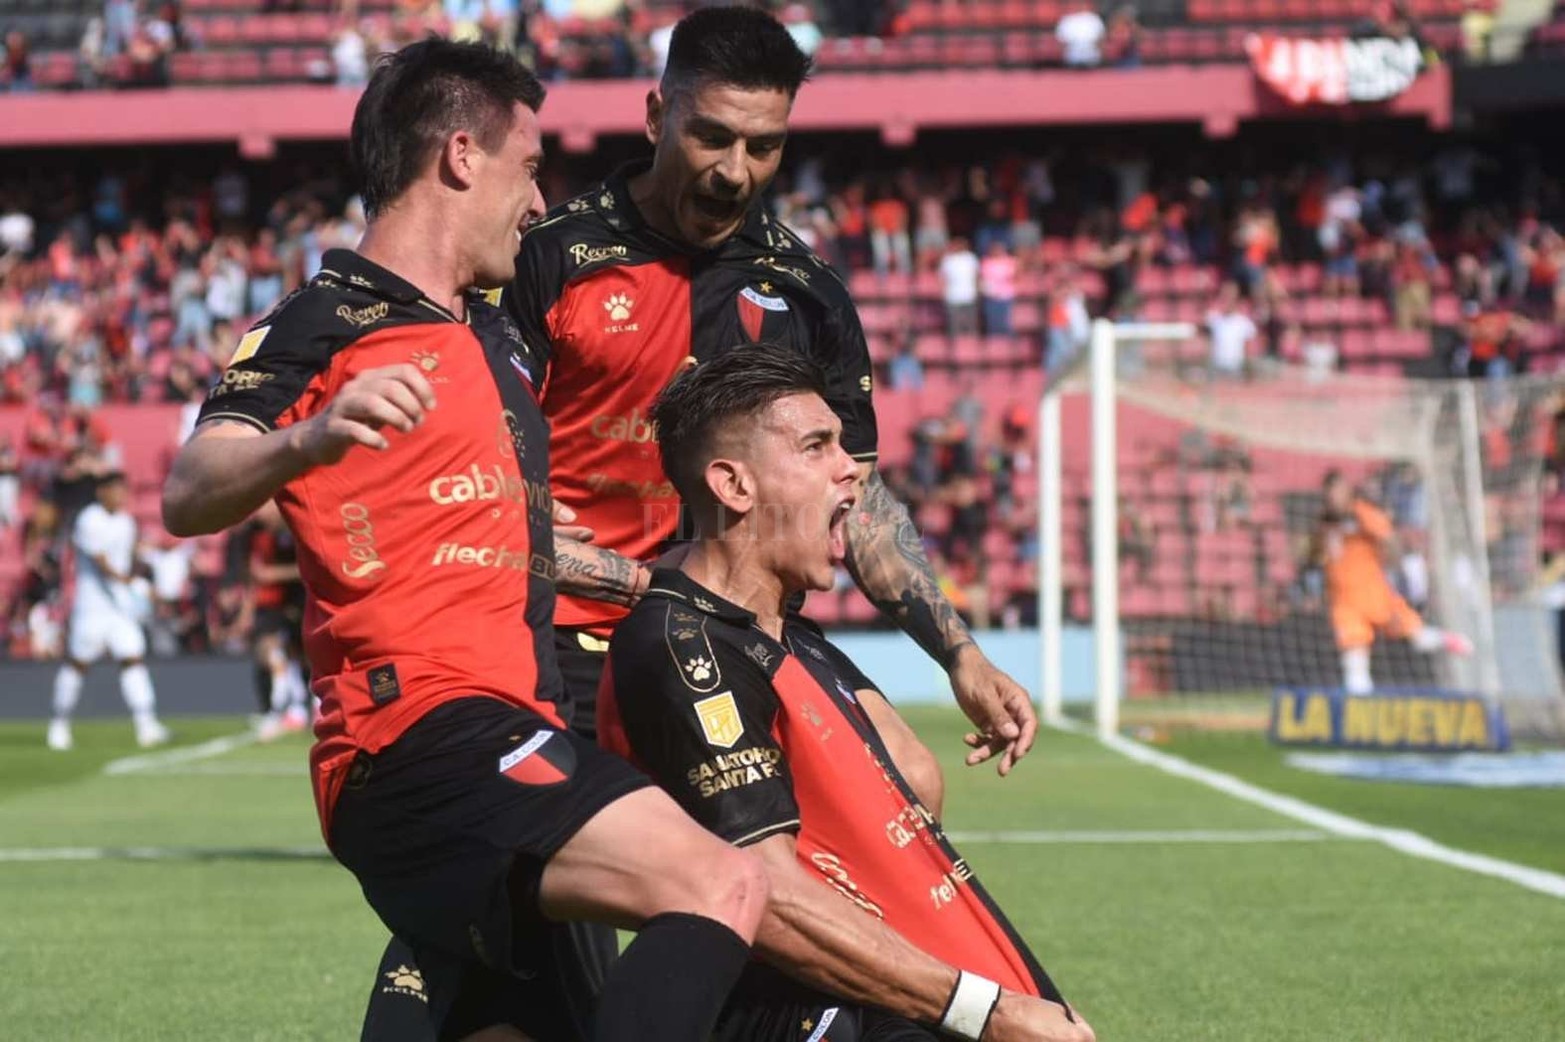 El festejo del Alexis Castro en el único gol que tuvo el partido. Colón le ganó 1 a 0 a Talleres y lleva siete partidos sin perder en su cancha.